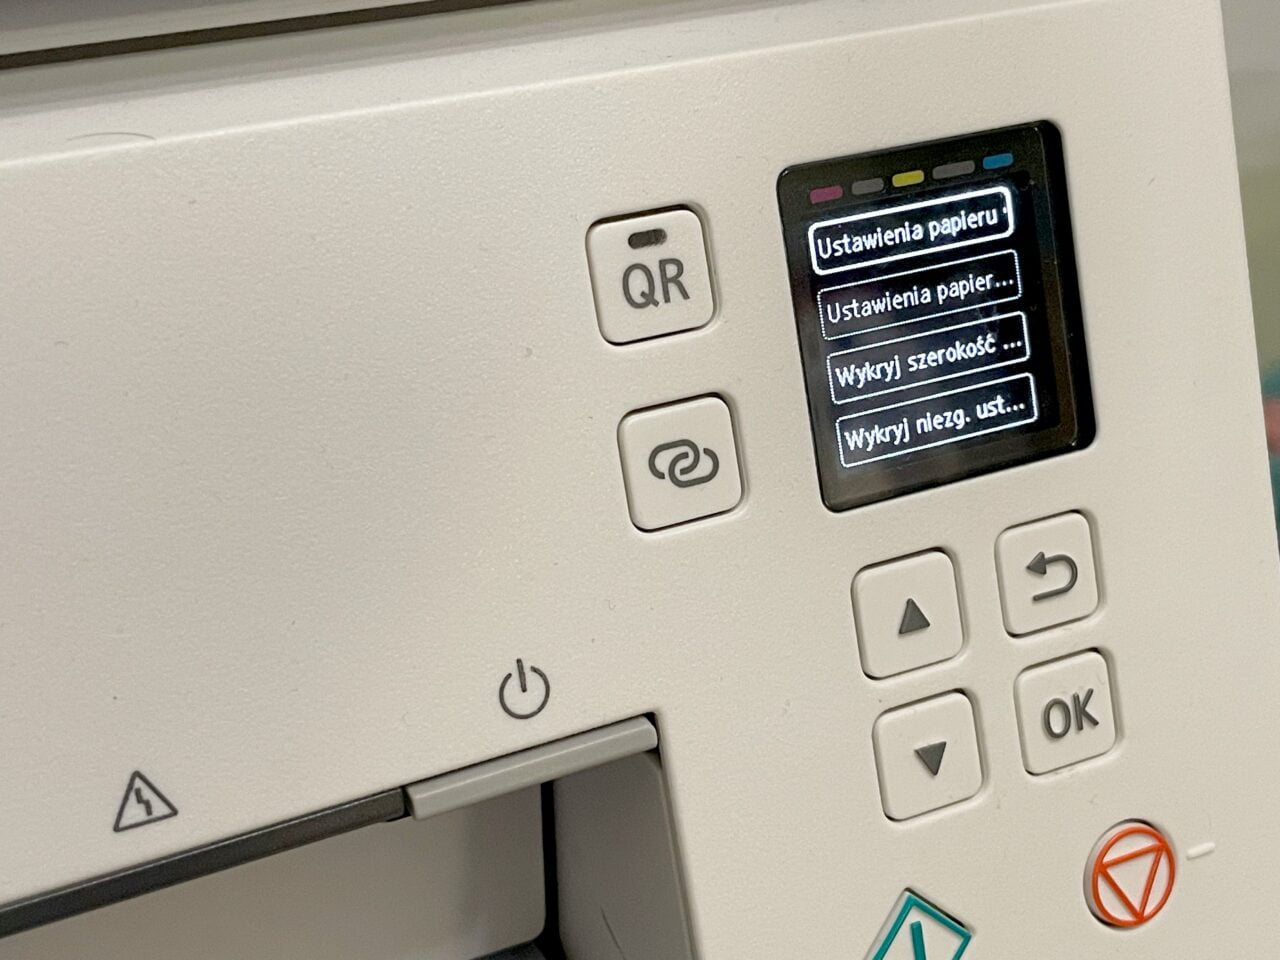 Panel sterowania drukarki z kolorowym ekranem LCD wyświetlającym opcje ustawień papieru oraz przyciskami nawigacji i potwierdzenia (OK).